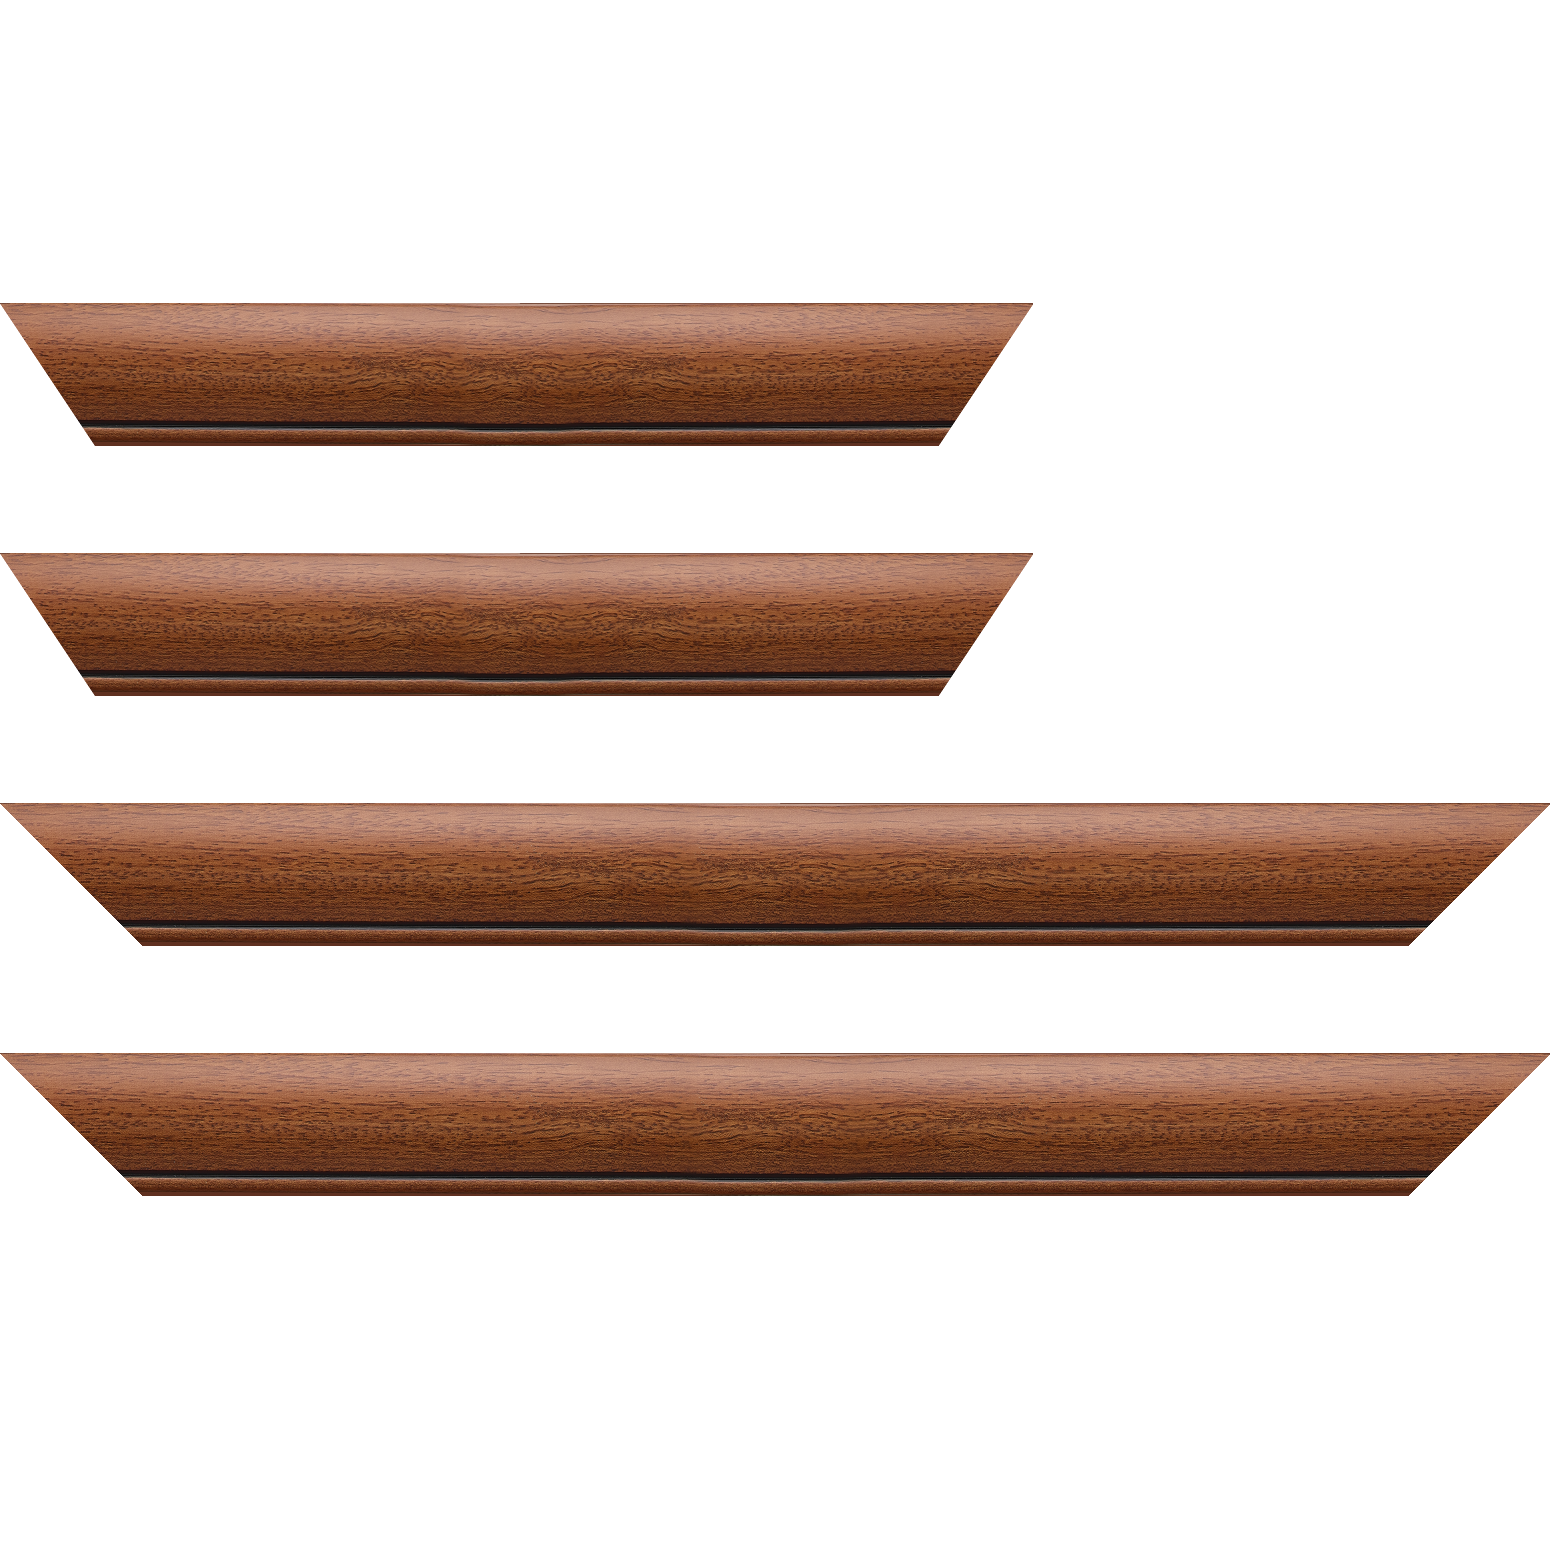 Baguette bois profil arrondi largeur 4.7cm couleur marron ton bois satiné rehaussé d'un filet noir - 59.4x84.1